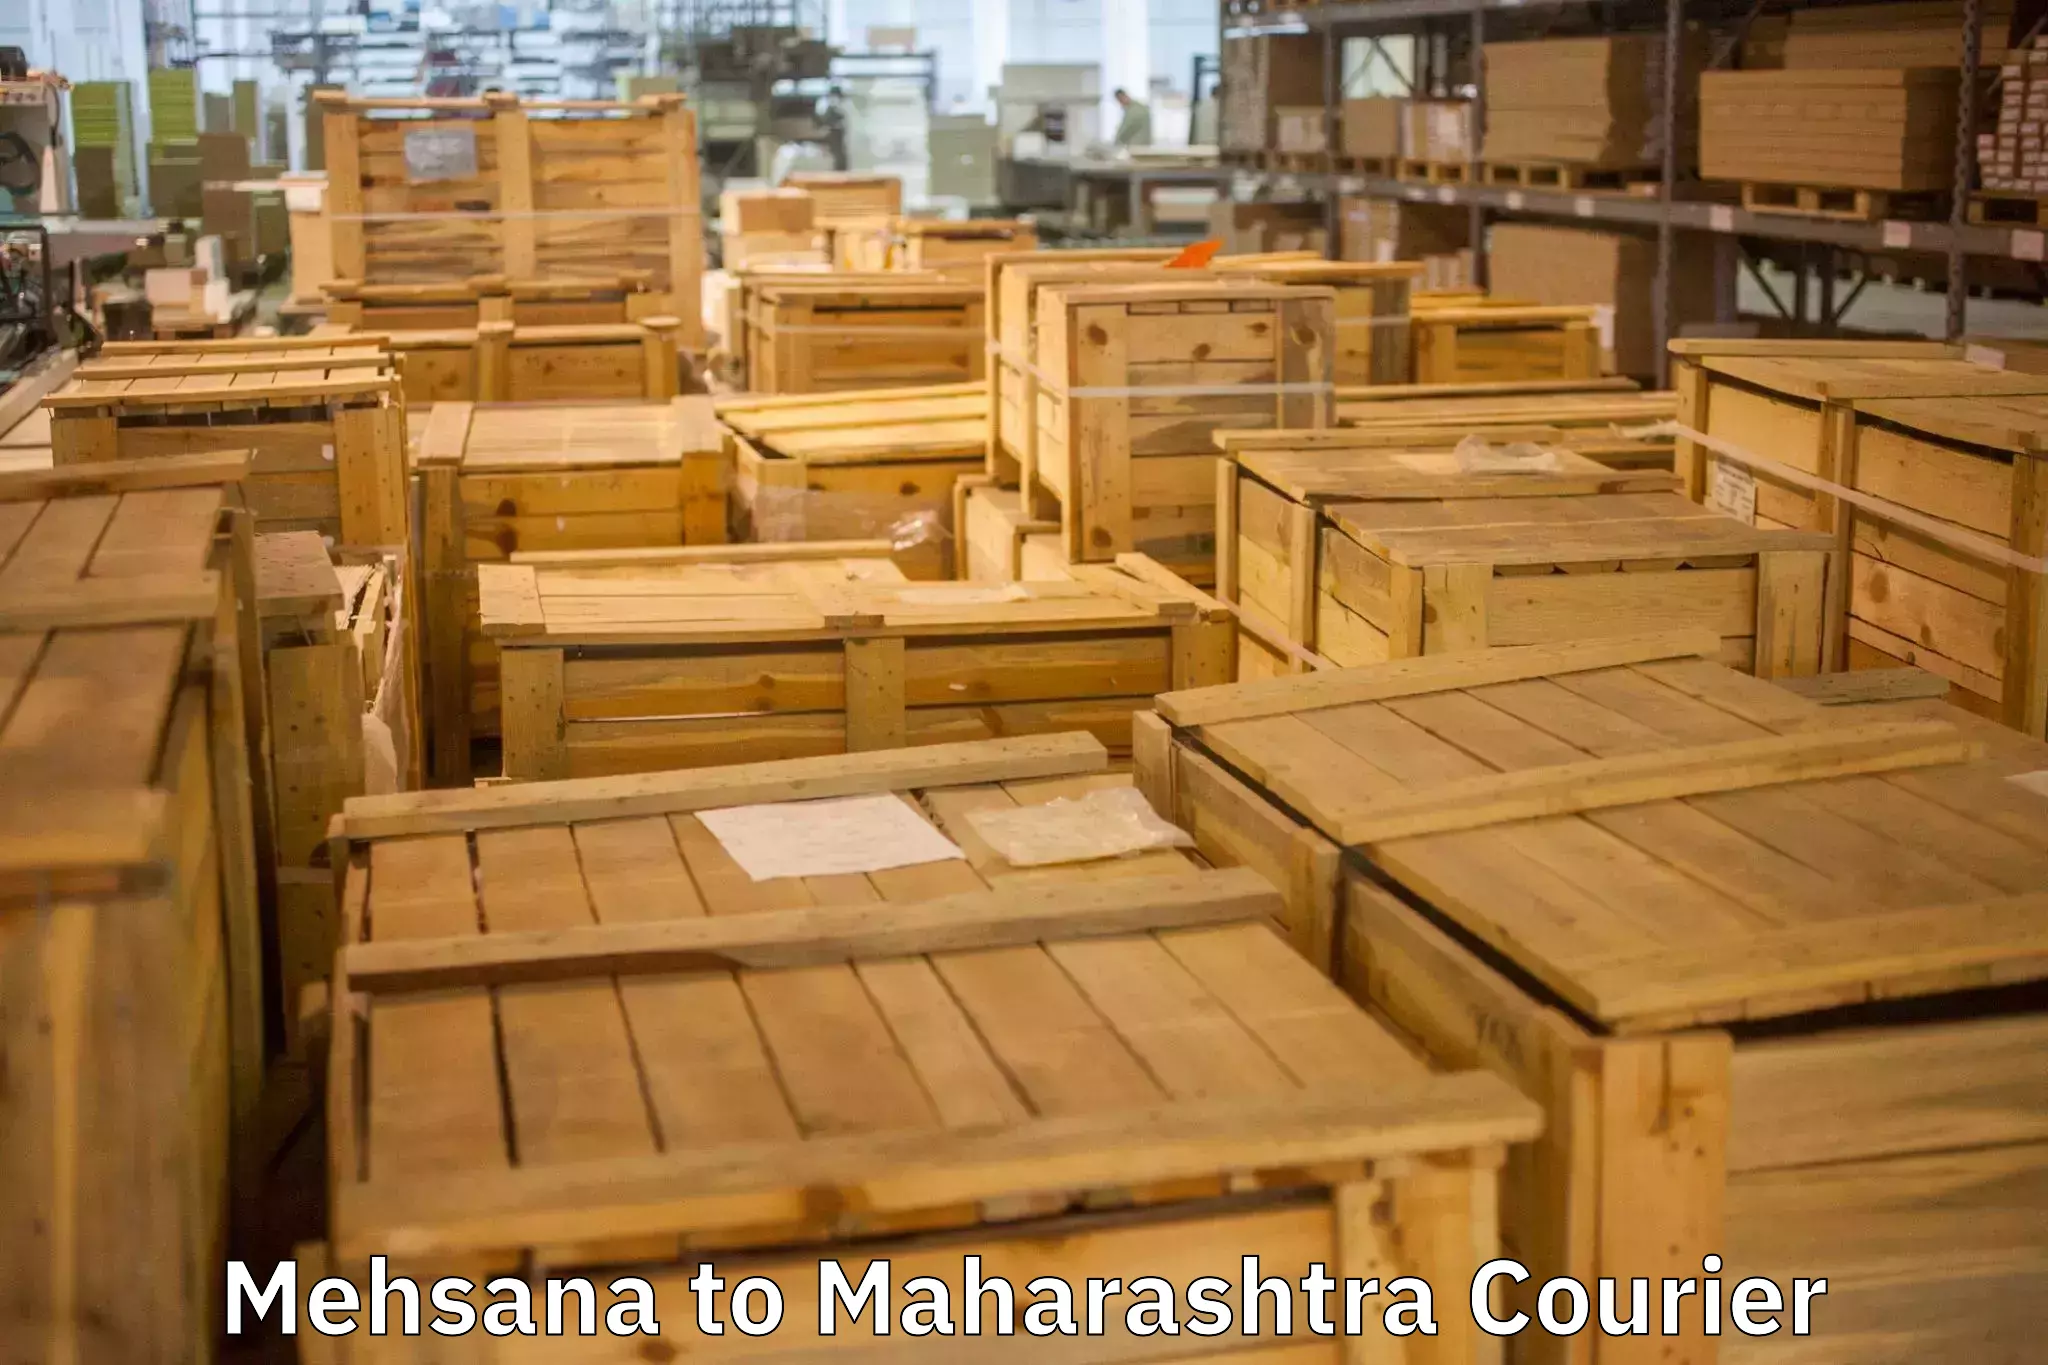 Budget-friendly movers Mehsana to Maharashtra